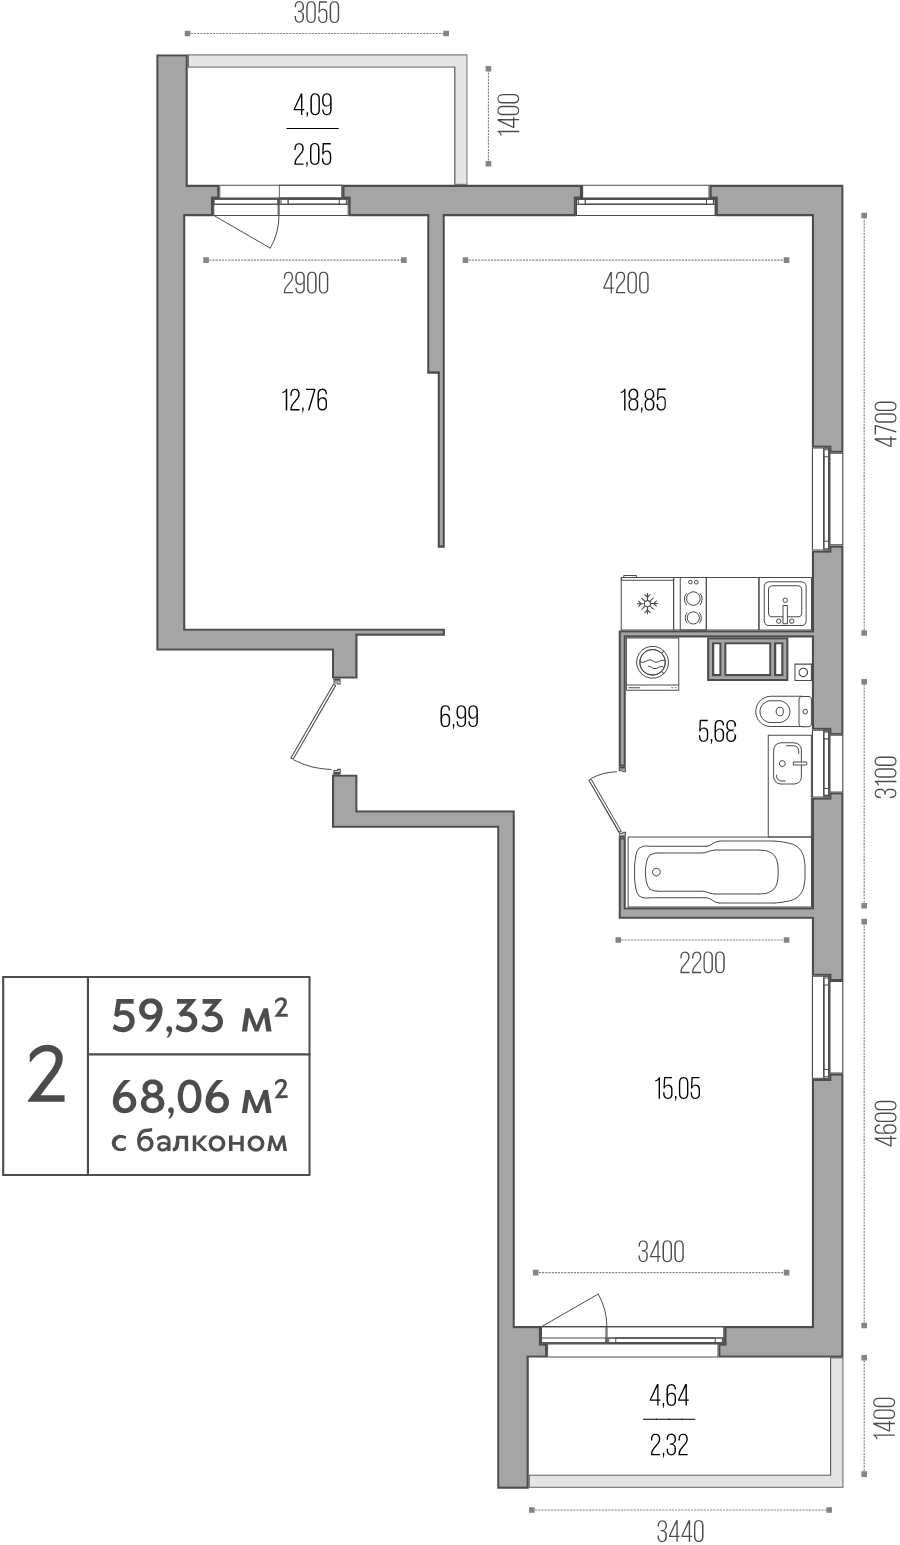 3-комнатная (Евро) квартира, 59.33 м² - планировка, фото №1